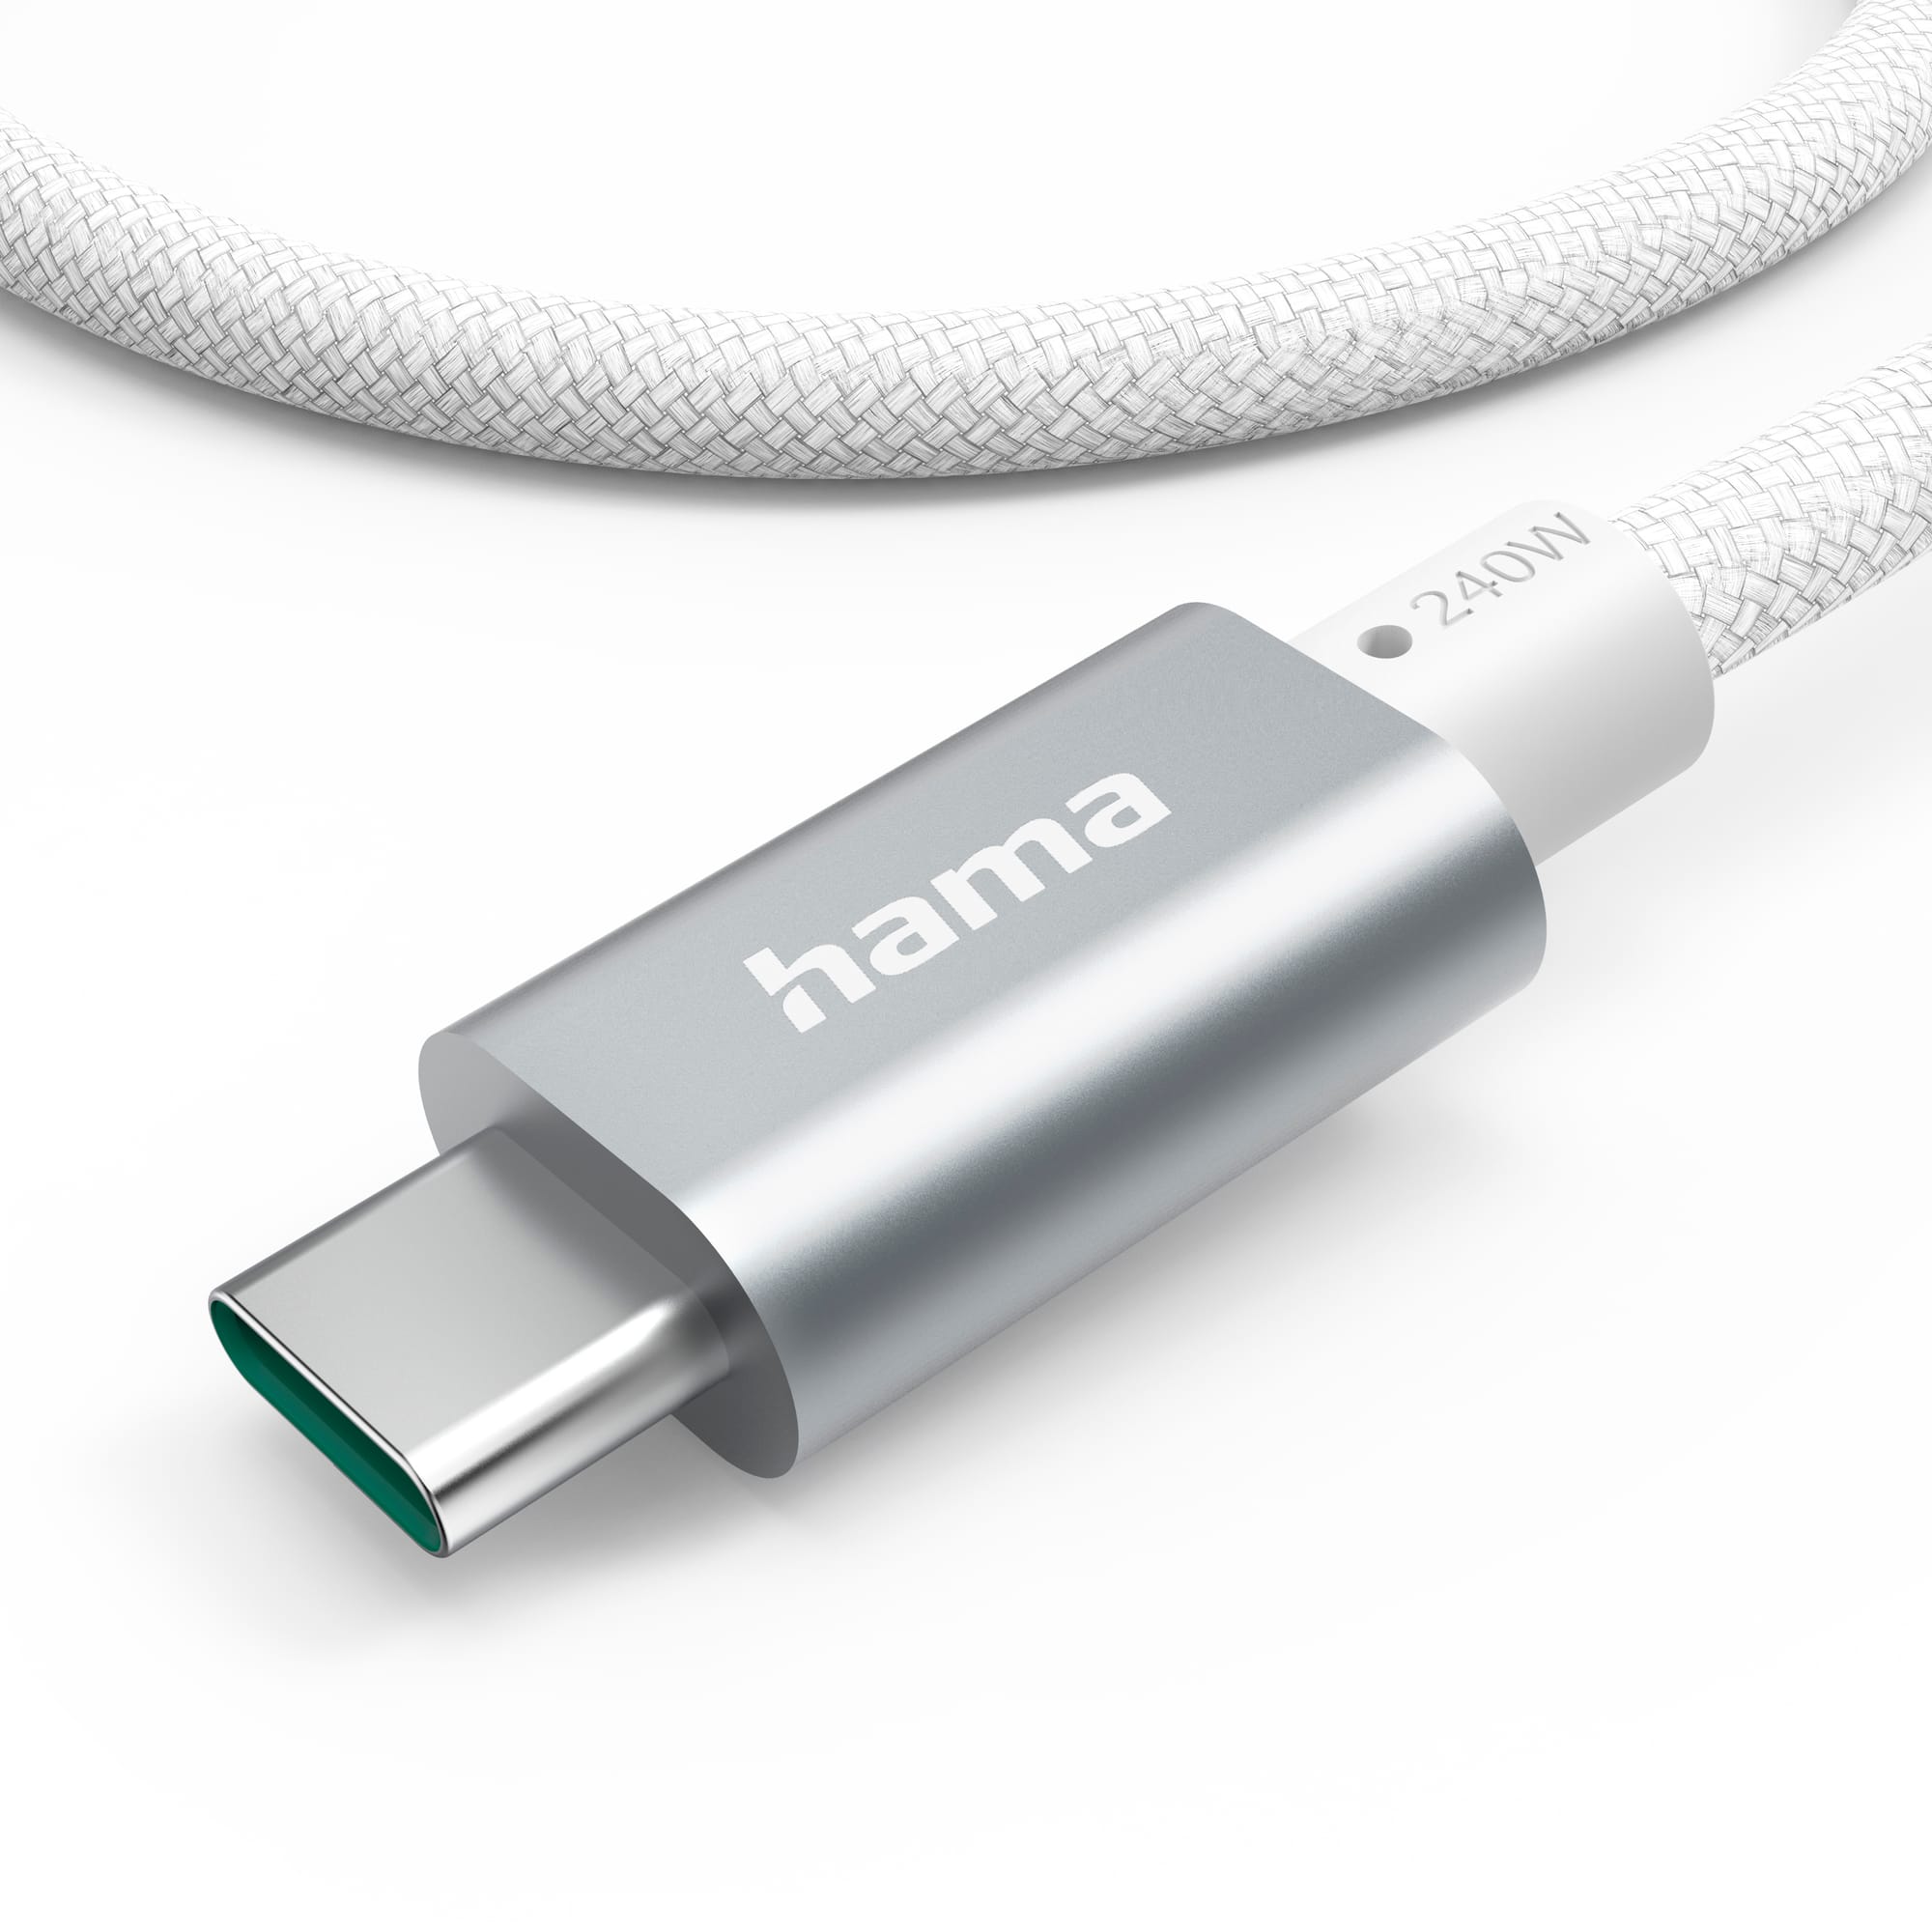 Hama lança novo cabo USB C que alia rapidez de carregamento e transferência de dados